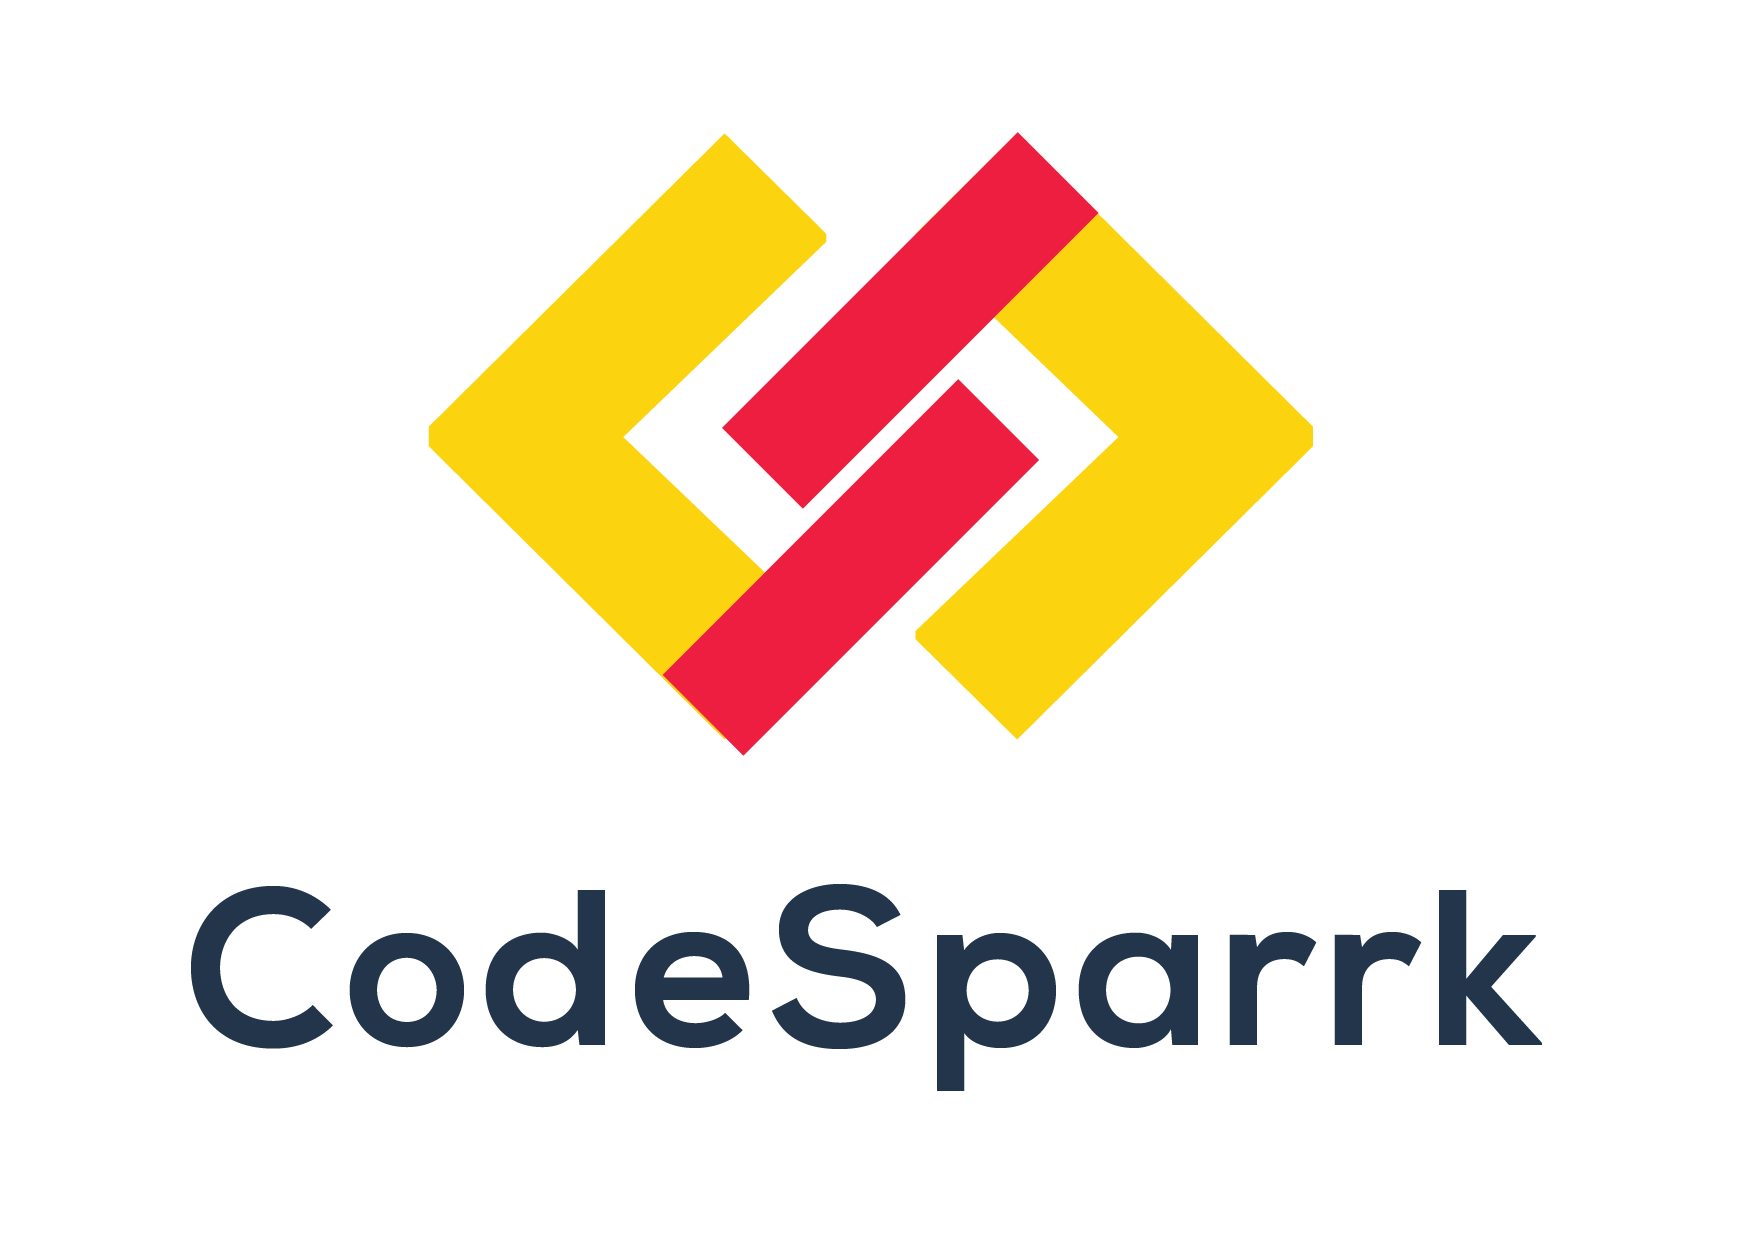 CodeSparrk